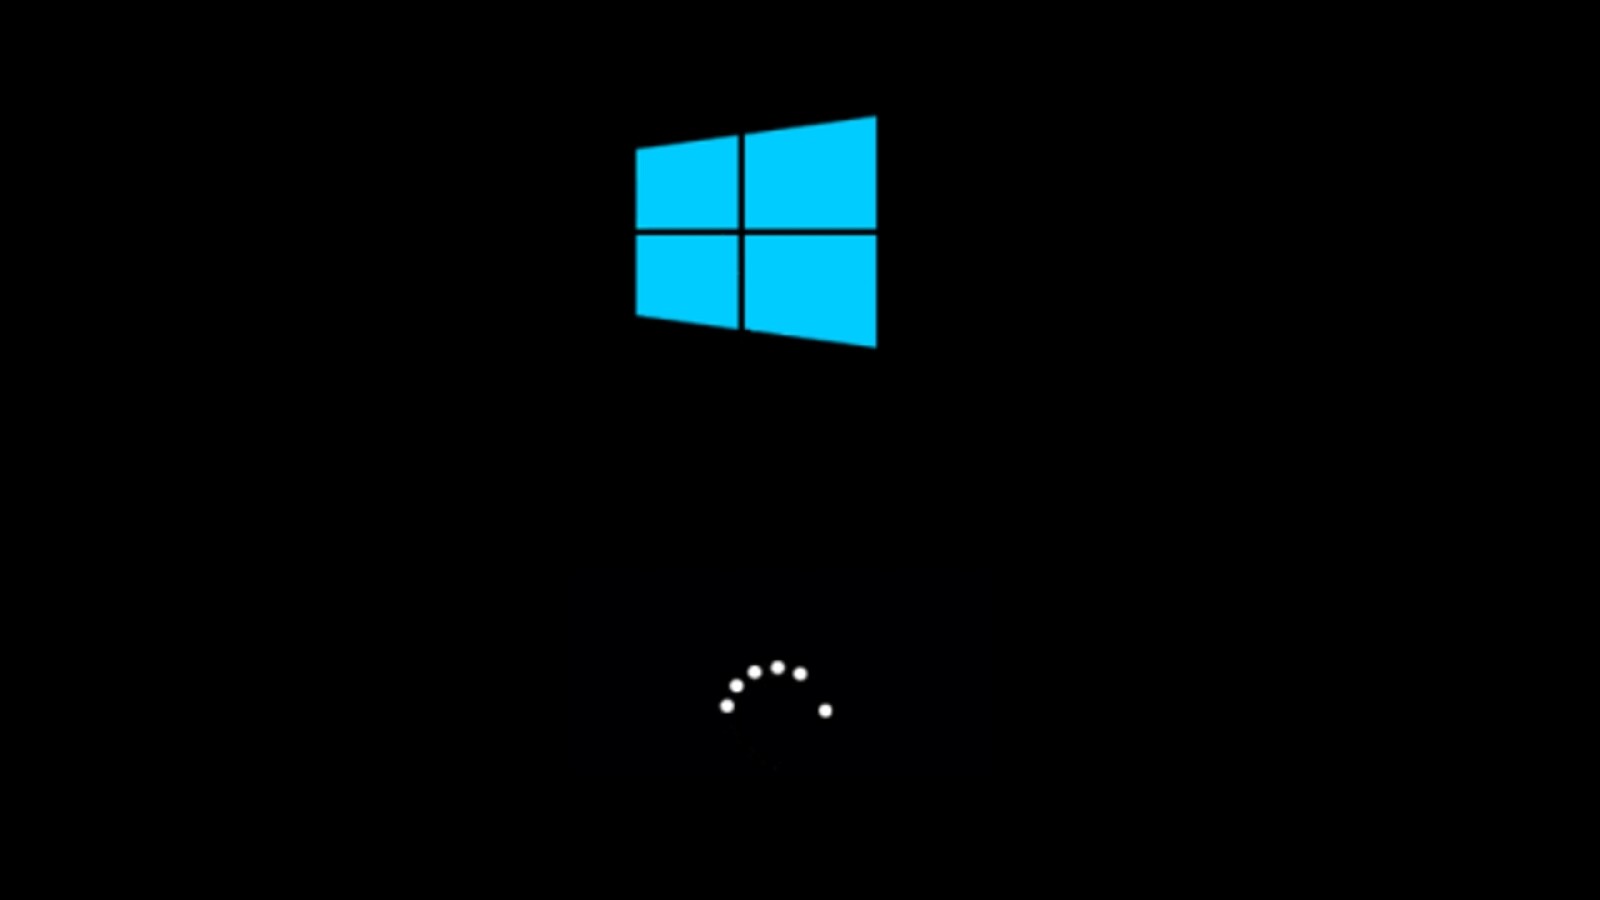 Windows 10: So deaktivert ihr den Schnellstart (Hybridmodus)